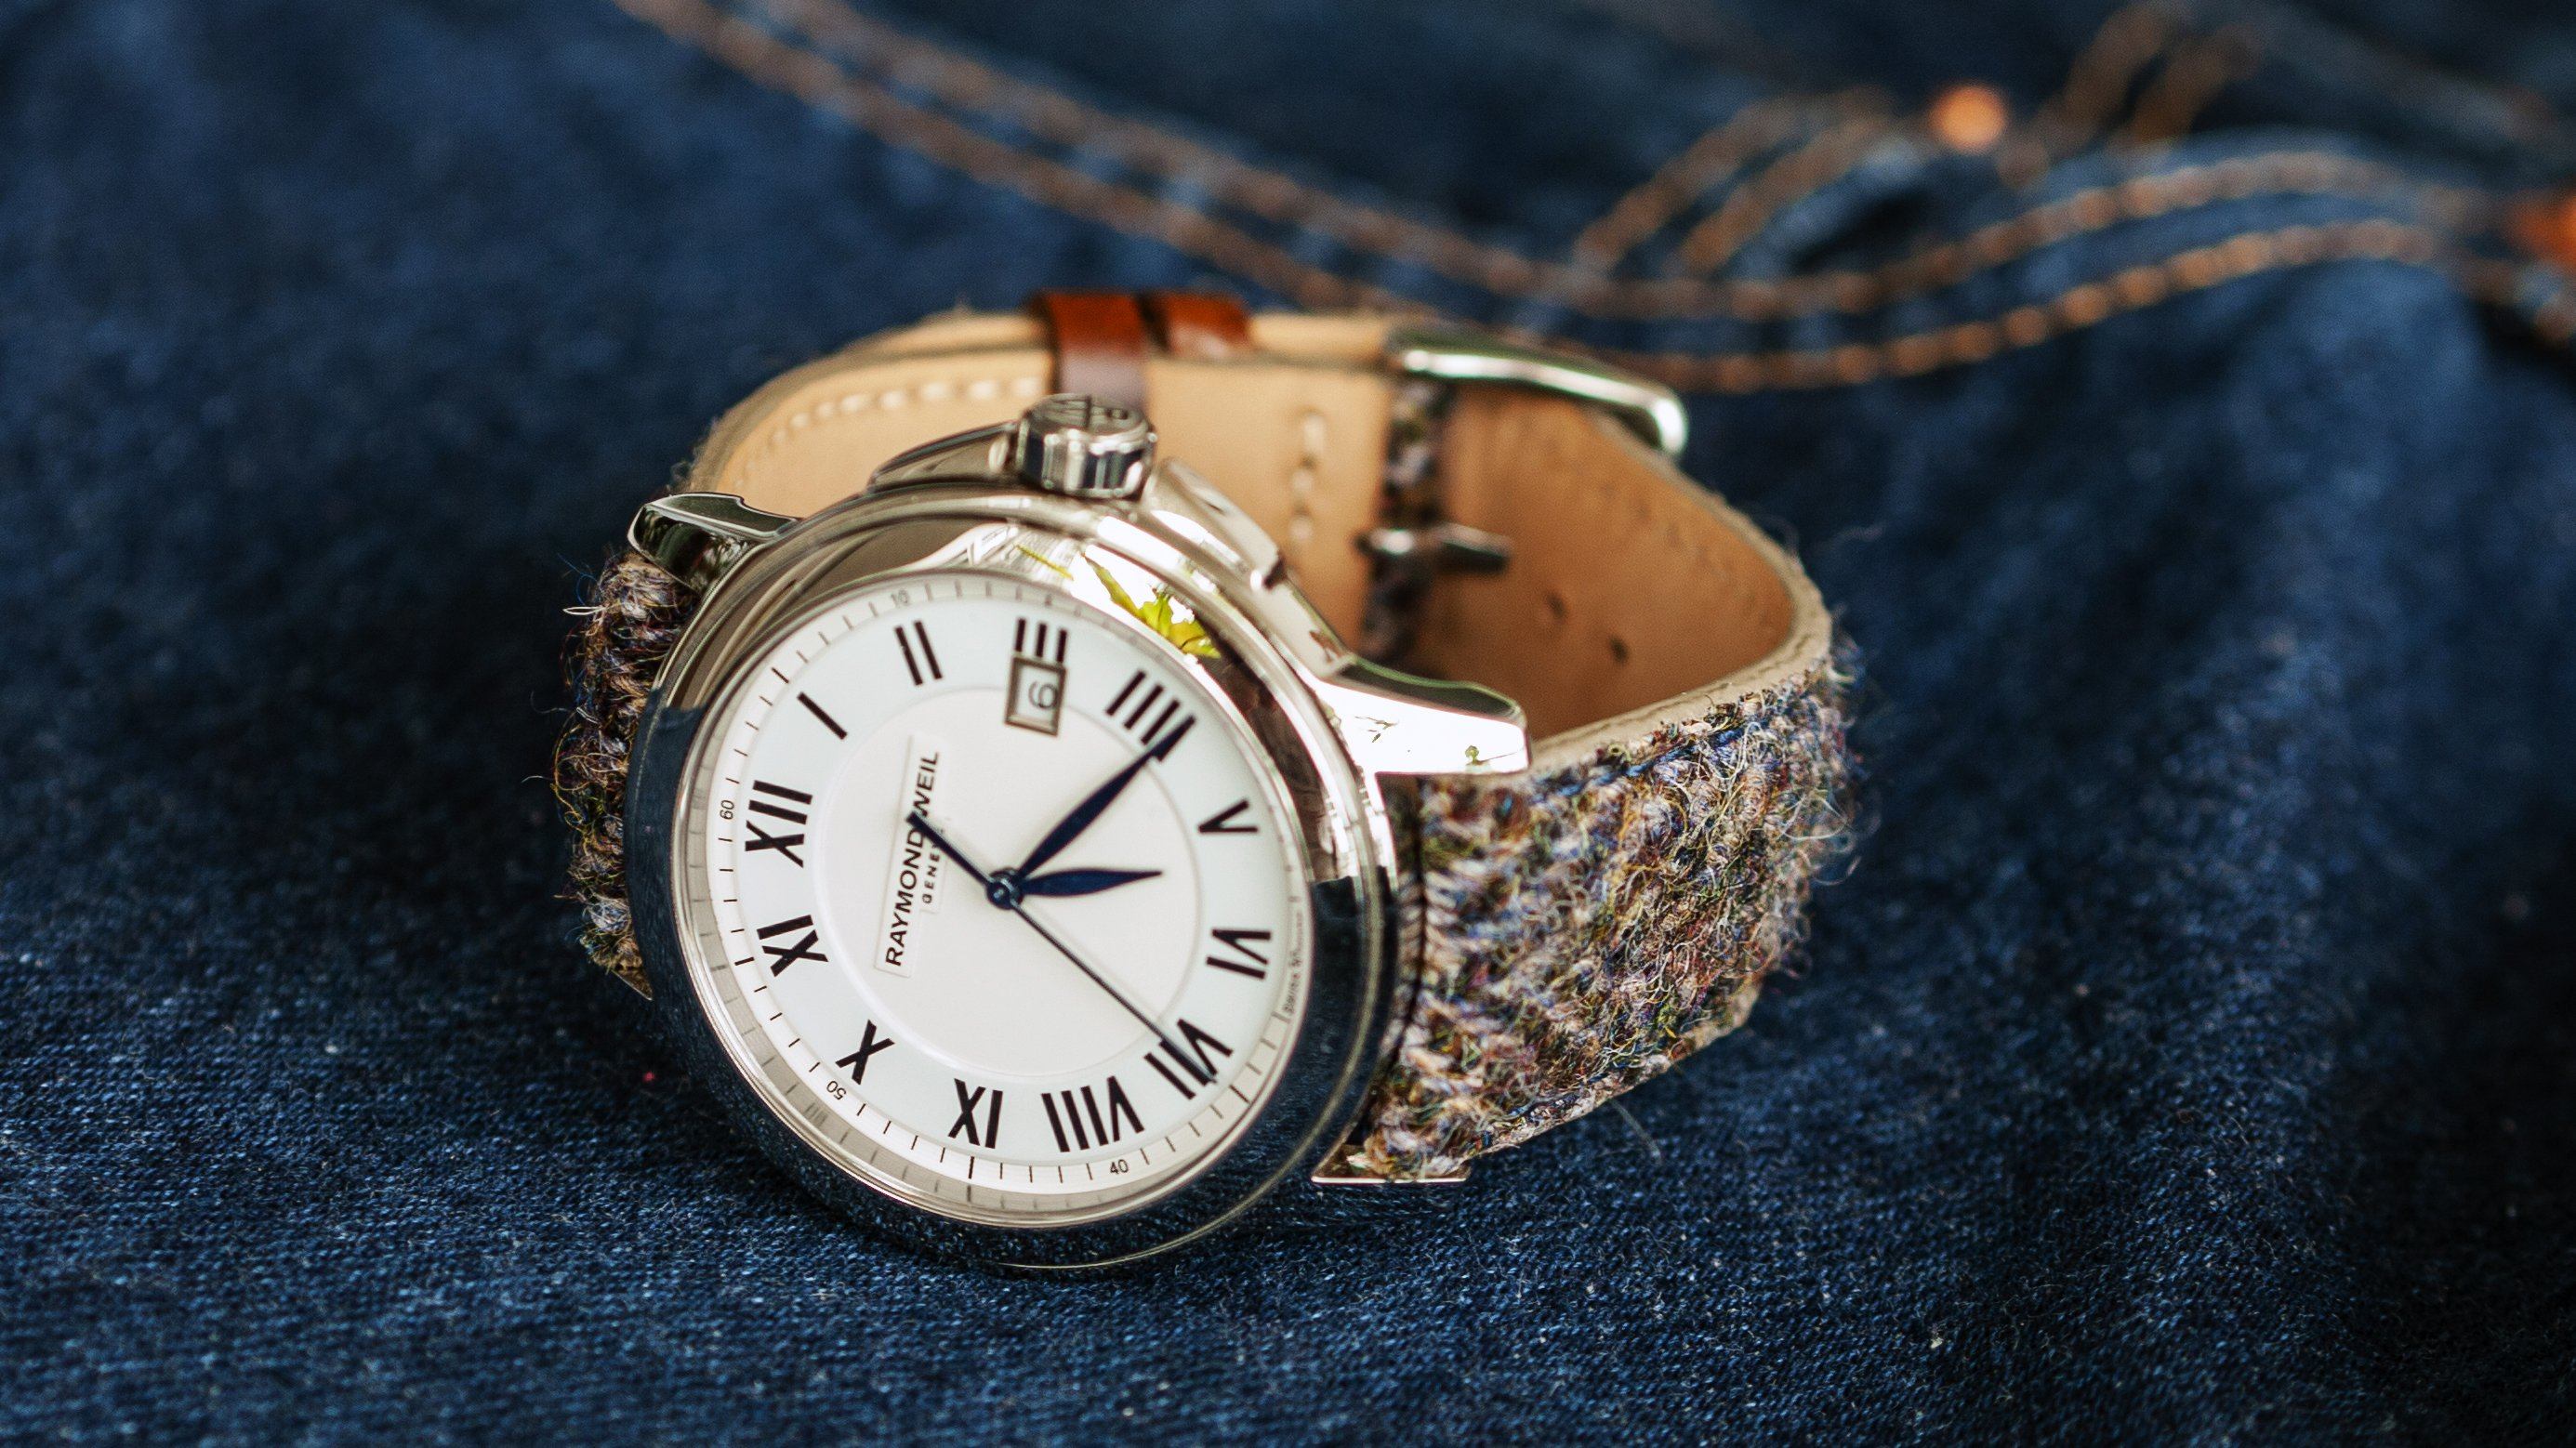 vario harris tweed herringbone watch strap on raymond weil watch